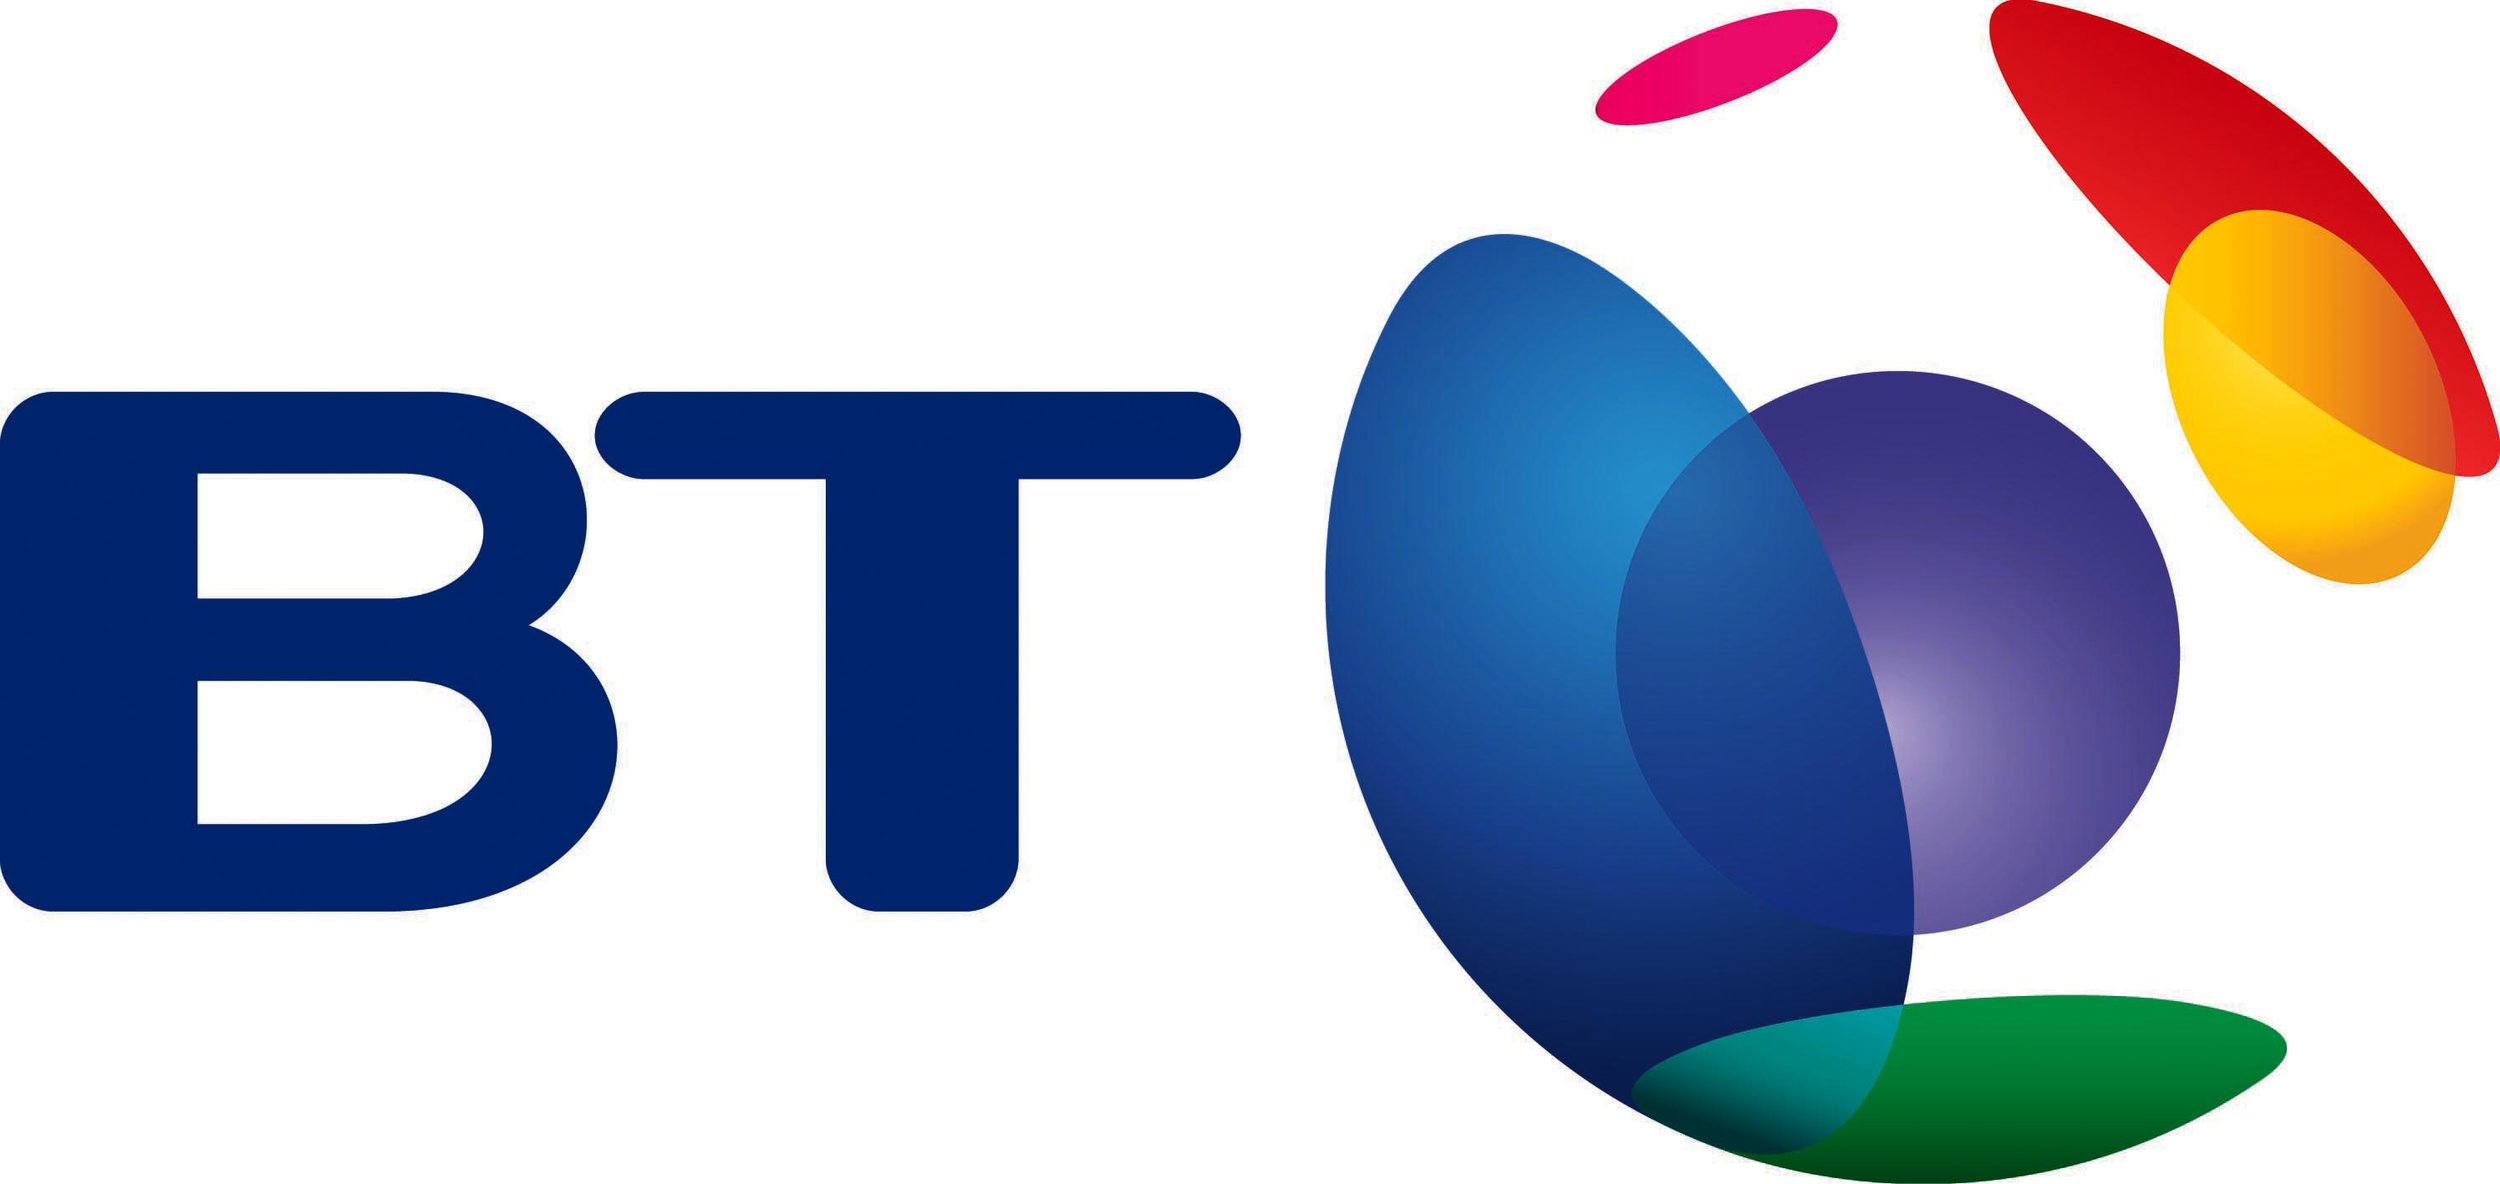 BT logo.jpg